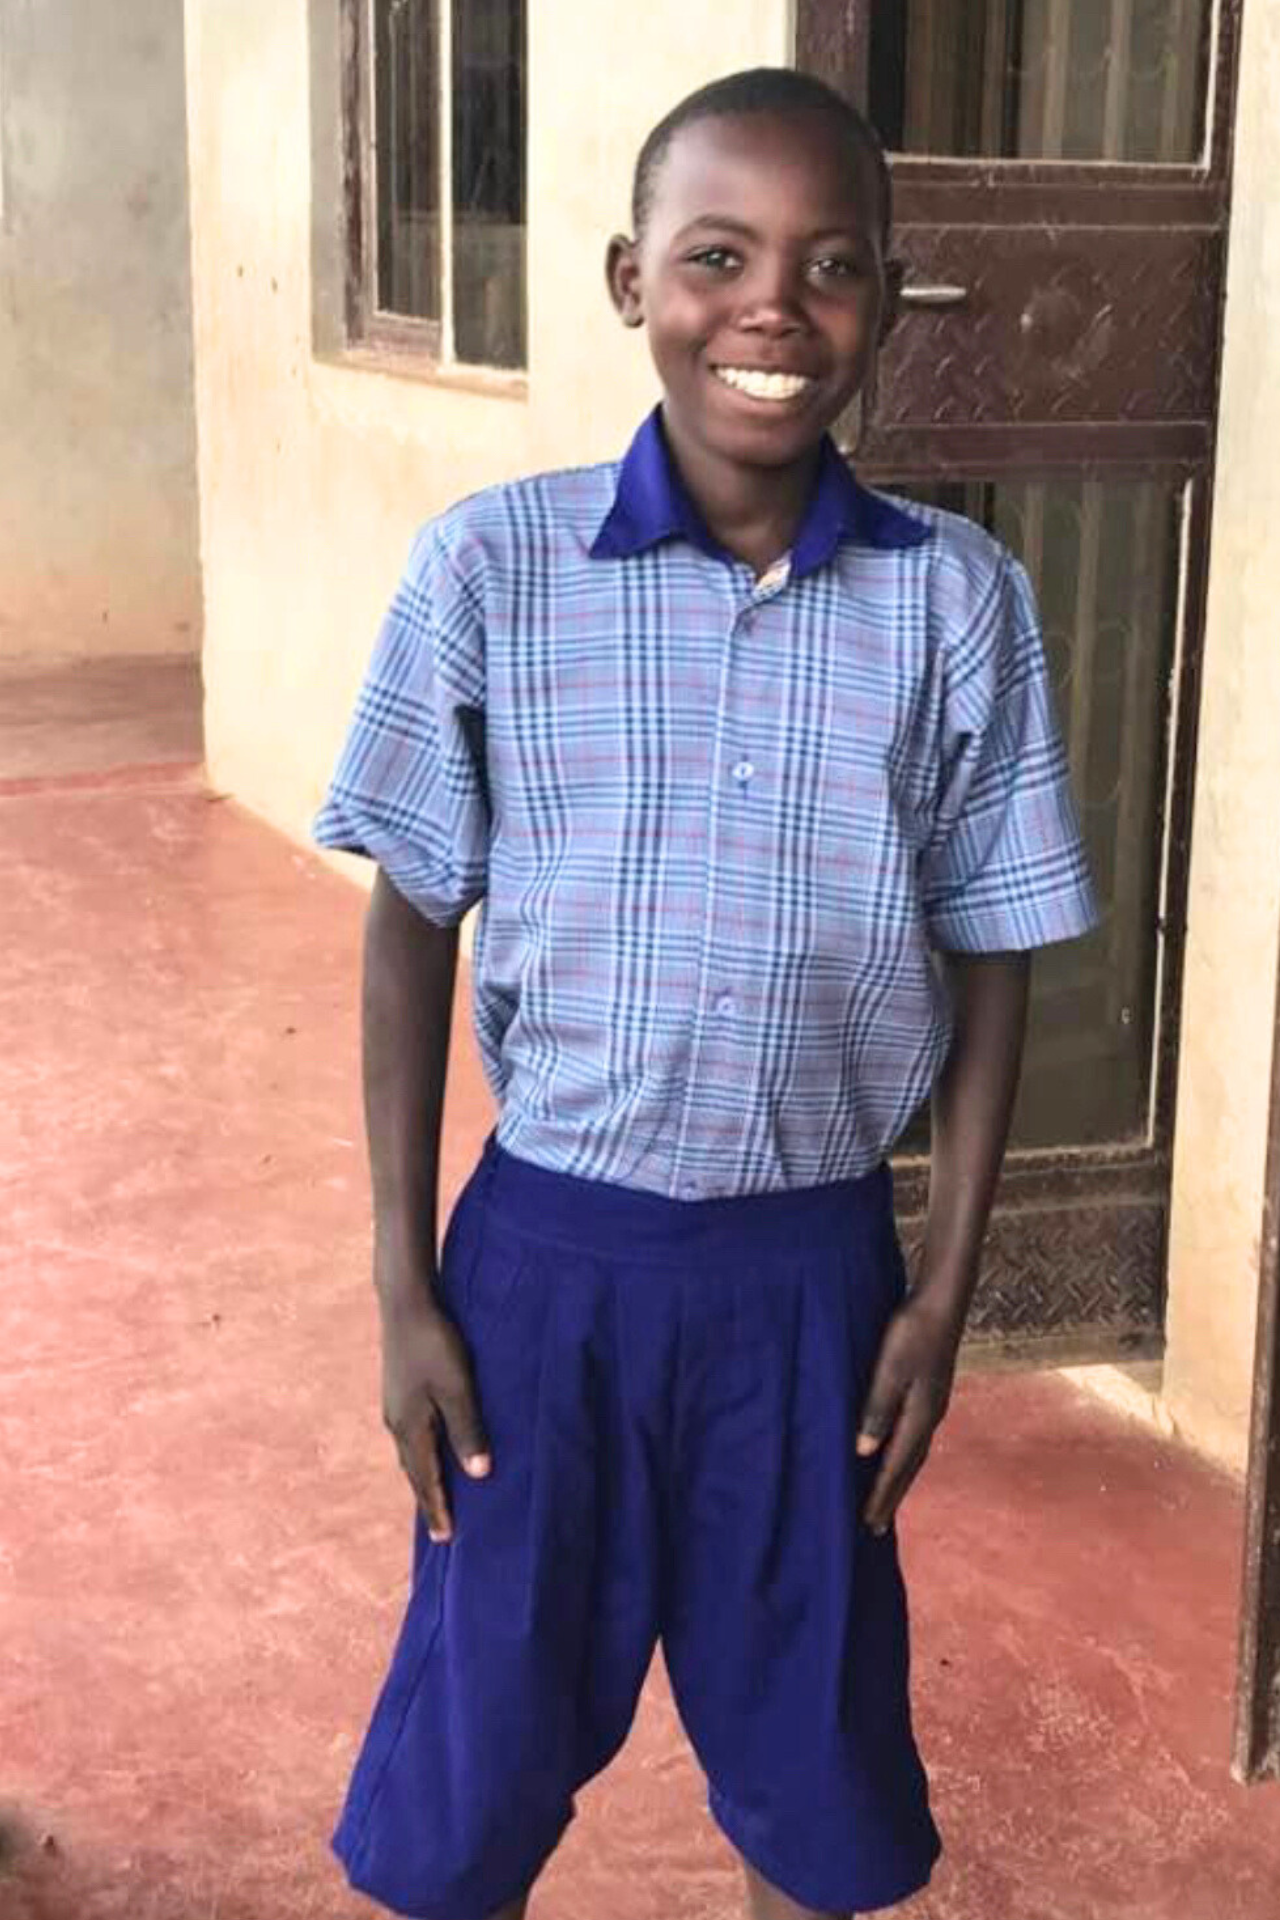 Kakooza in school uniform in Uganda